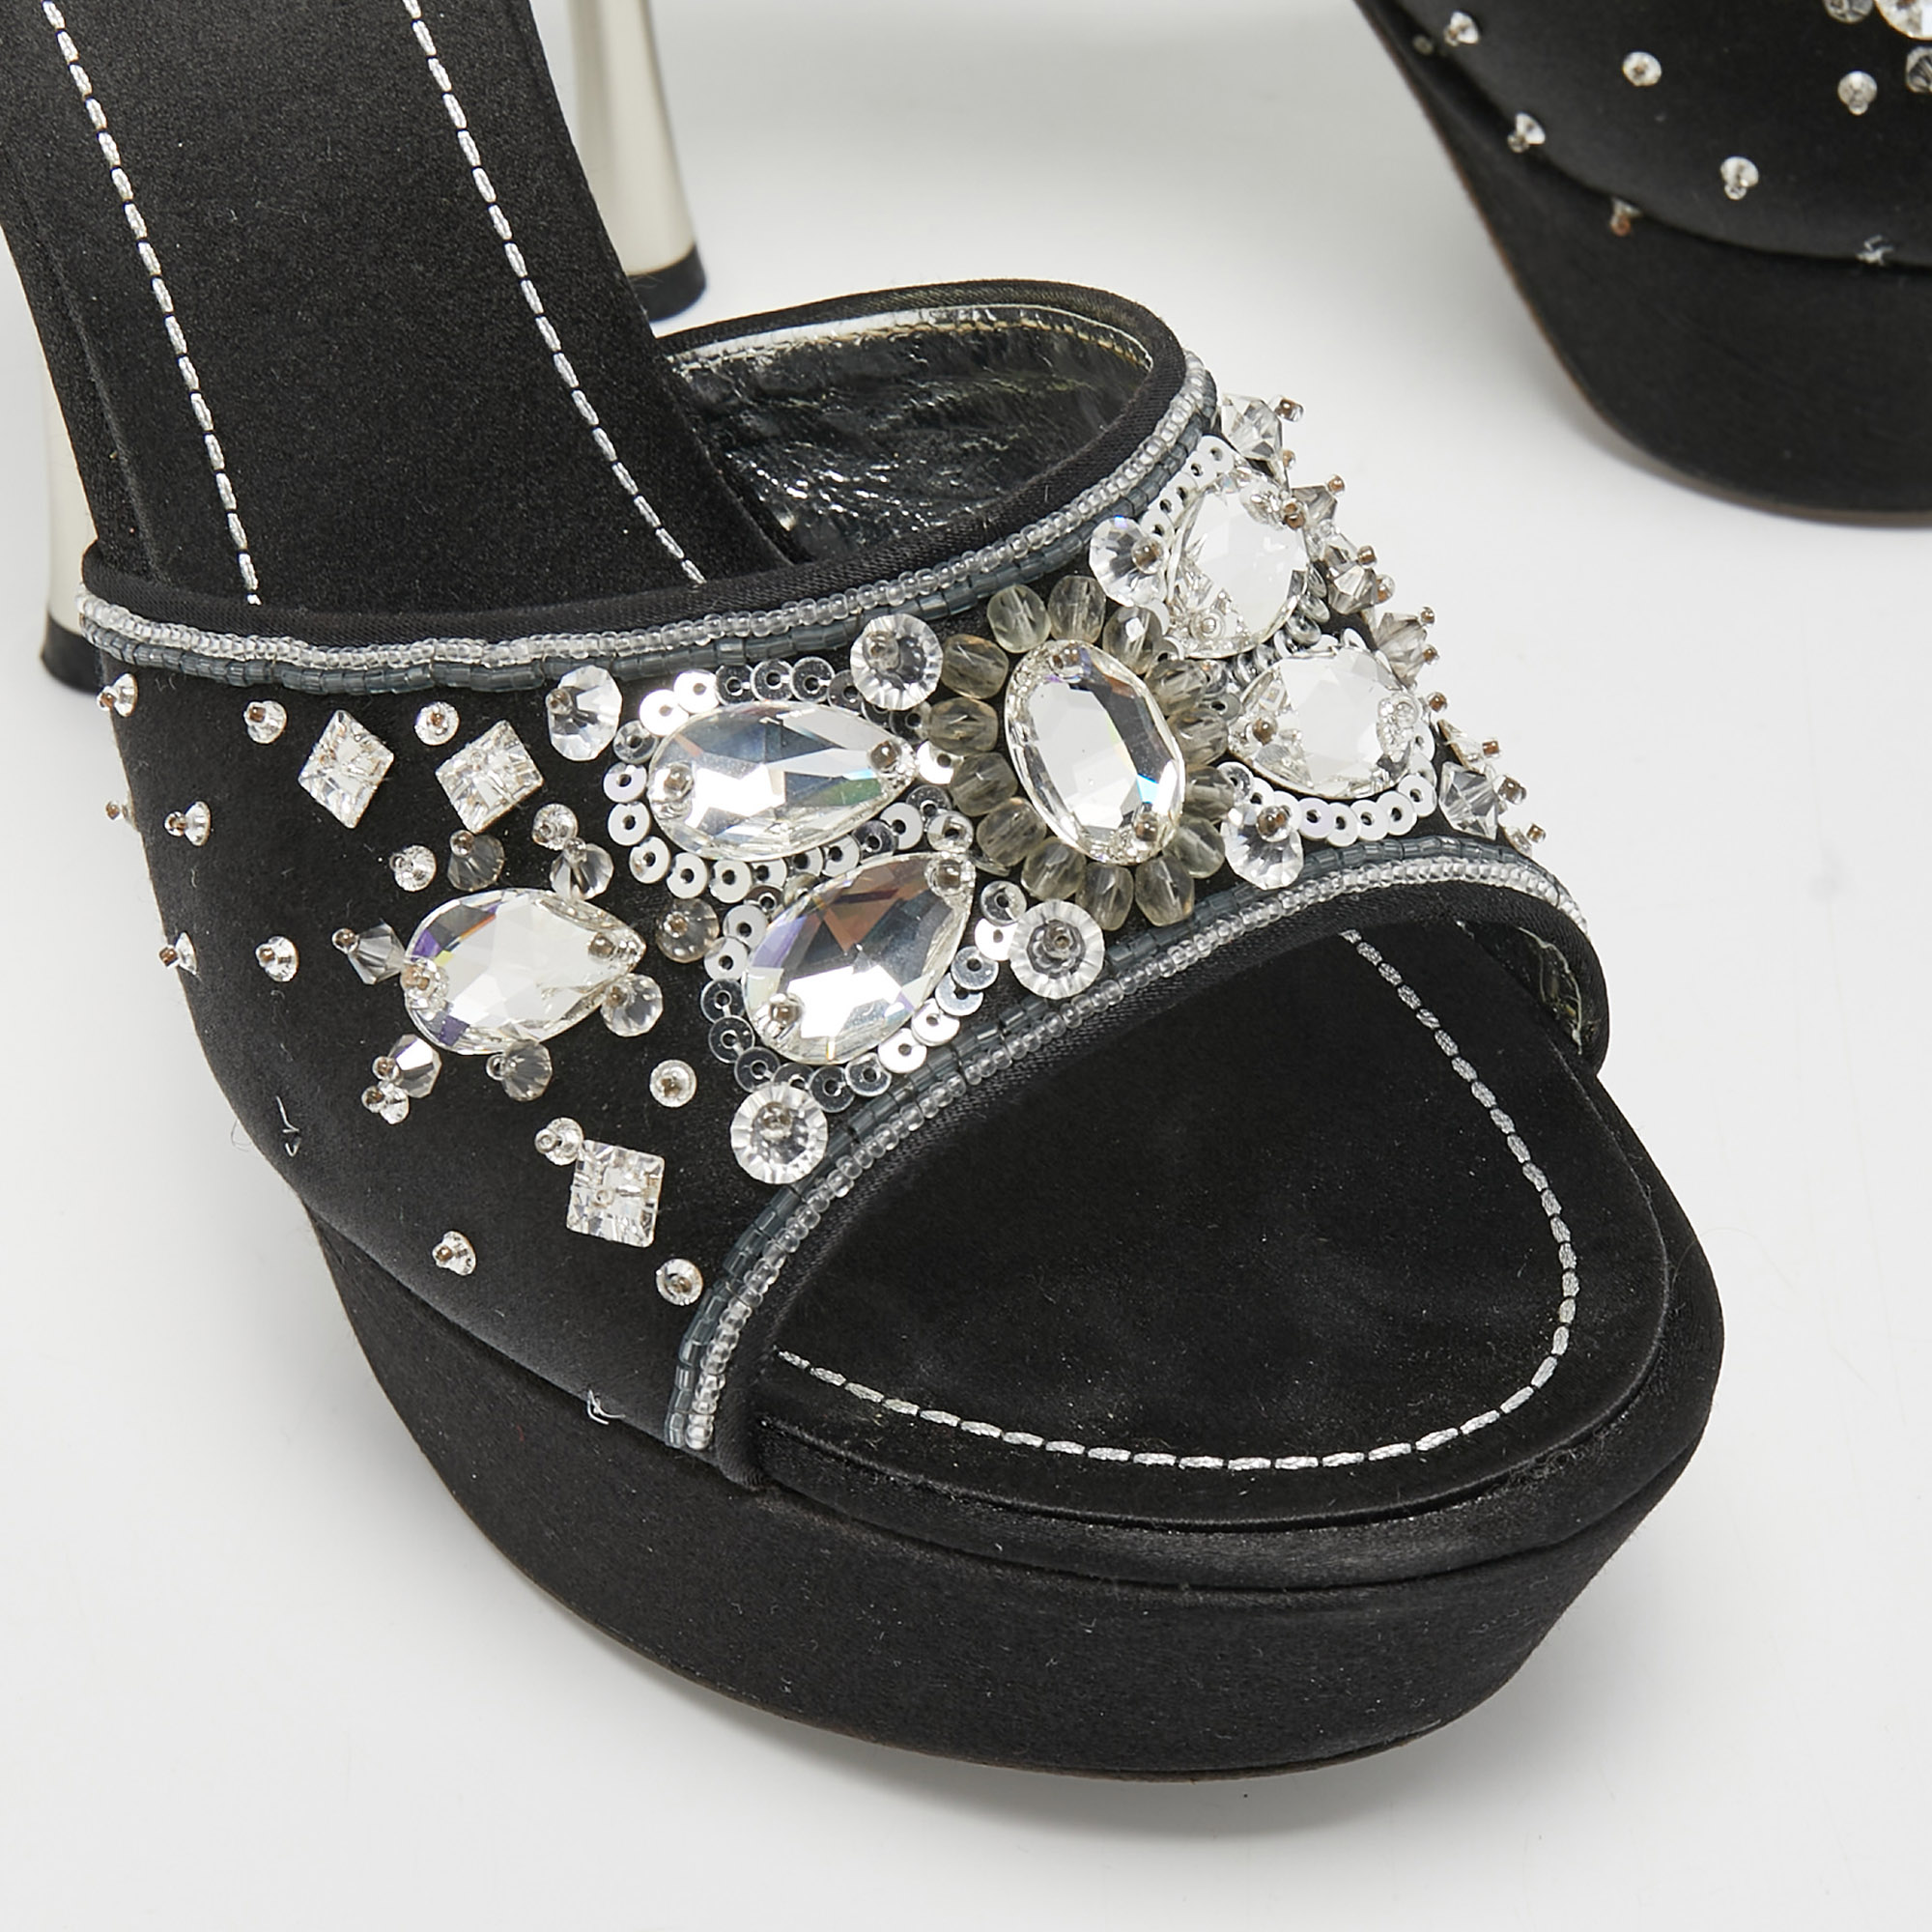 René Caovilla Black Satin Embellished Slide Sandals Size 37.5